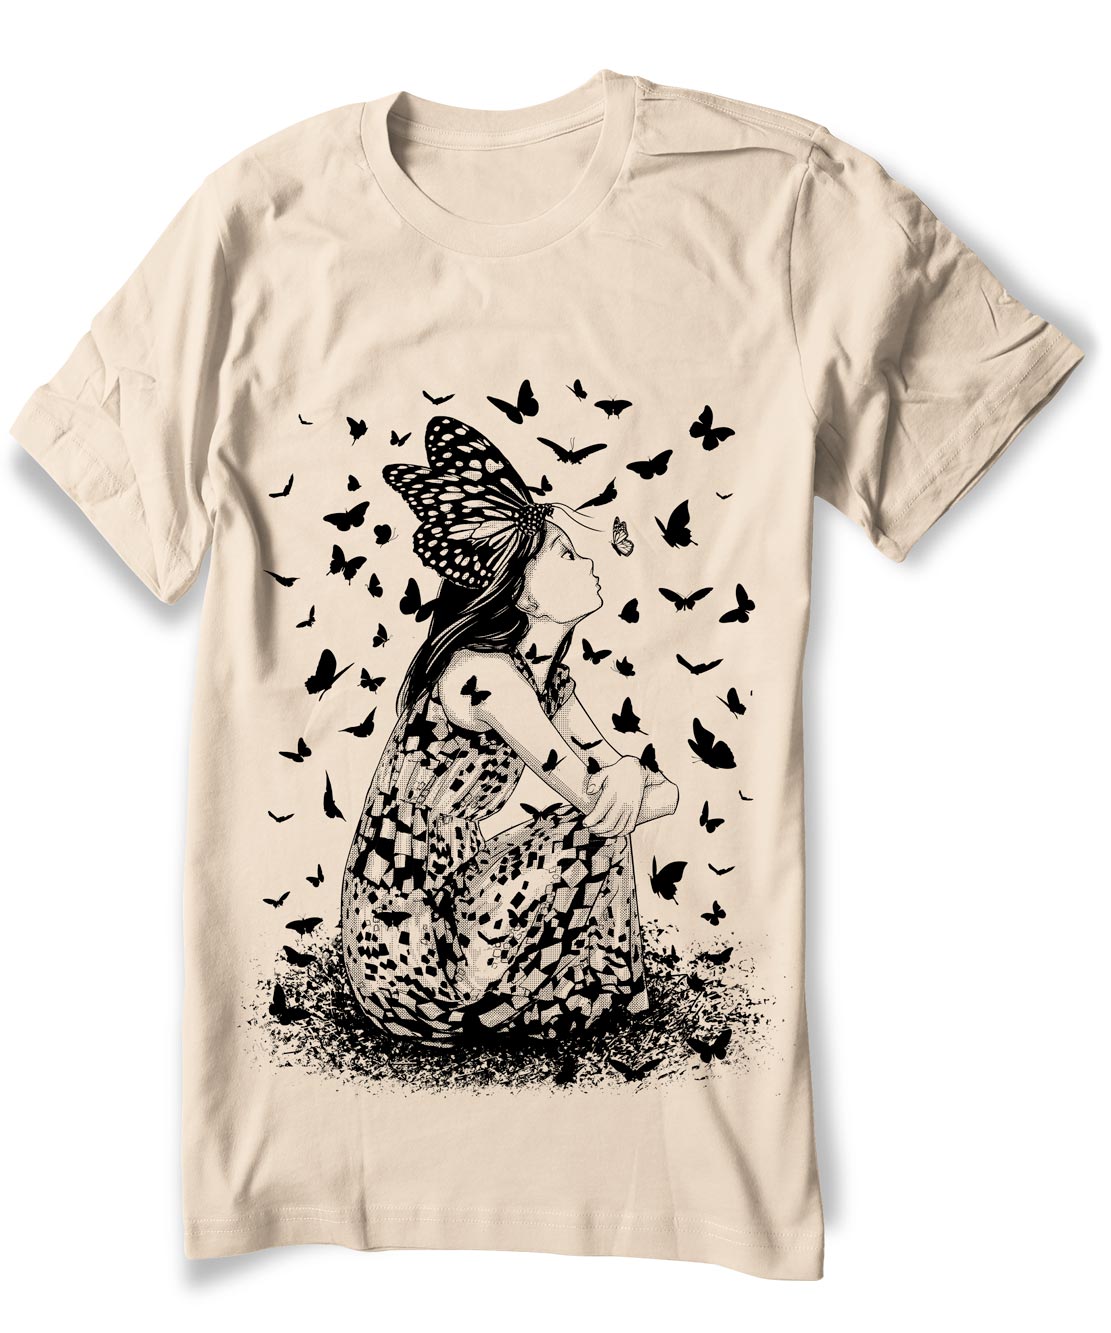 Anime Butterfly Girl T-shirt